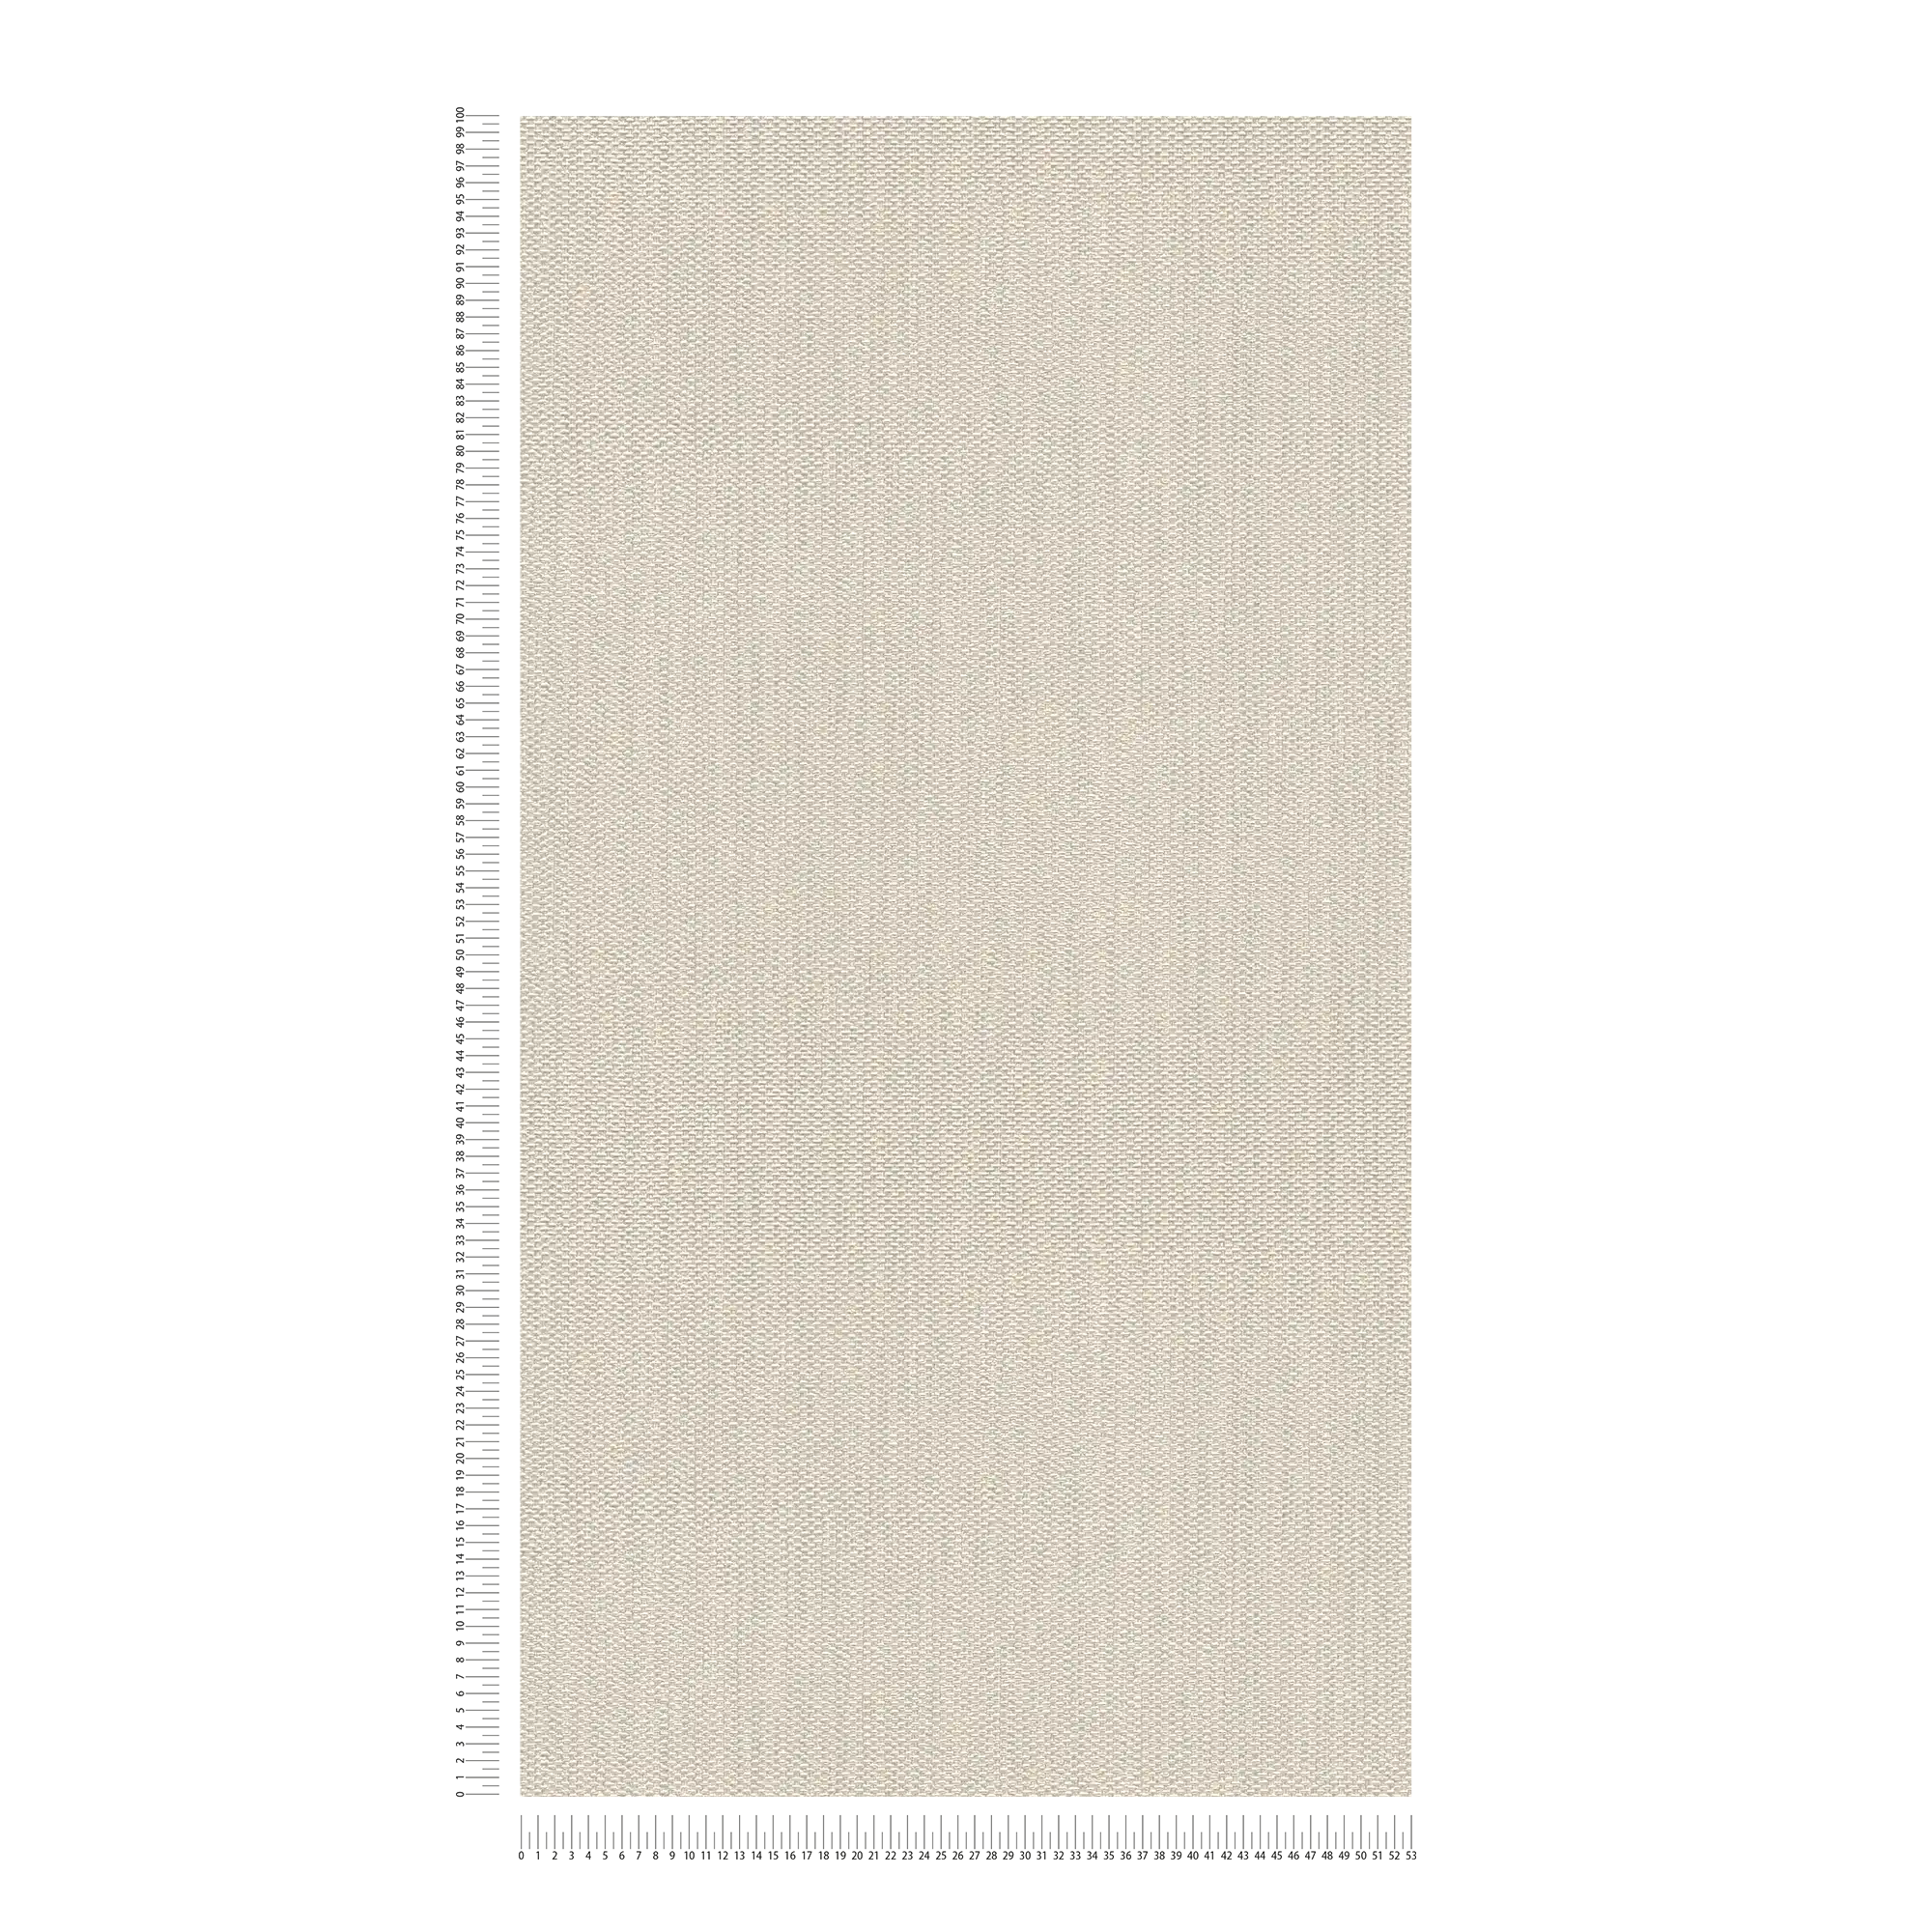             papier peint en papier intissé aspect textile - crème, gris
        